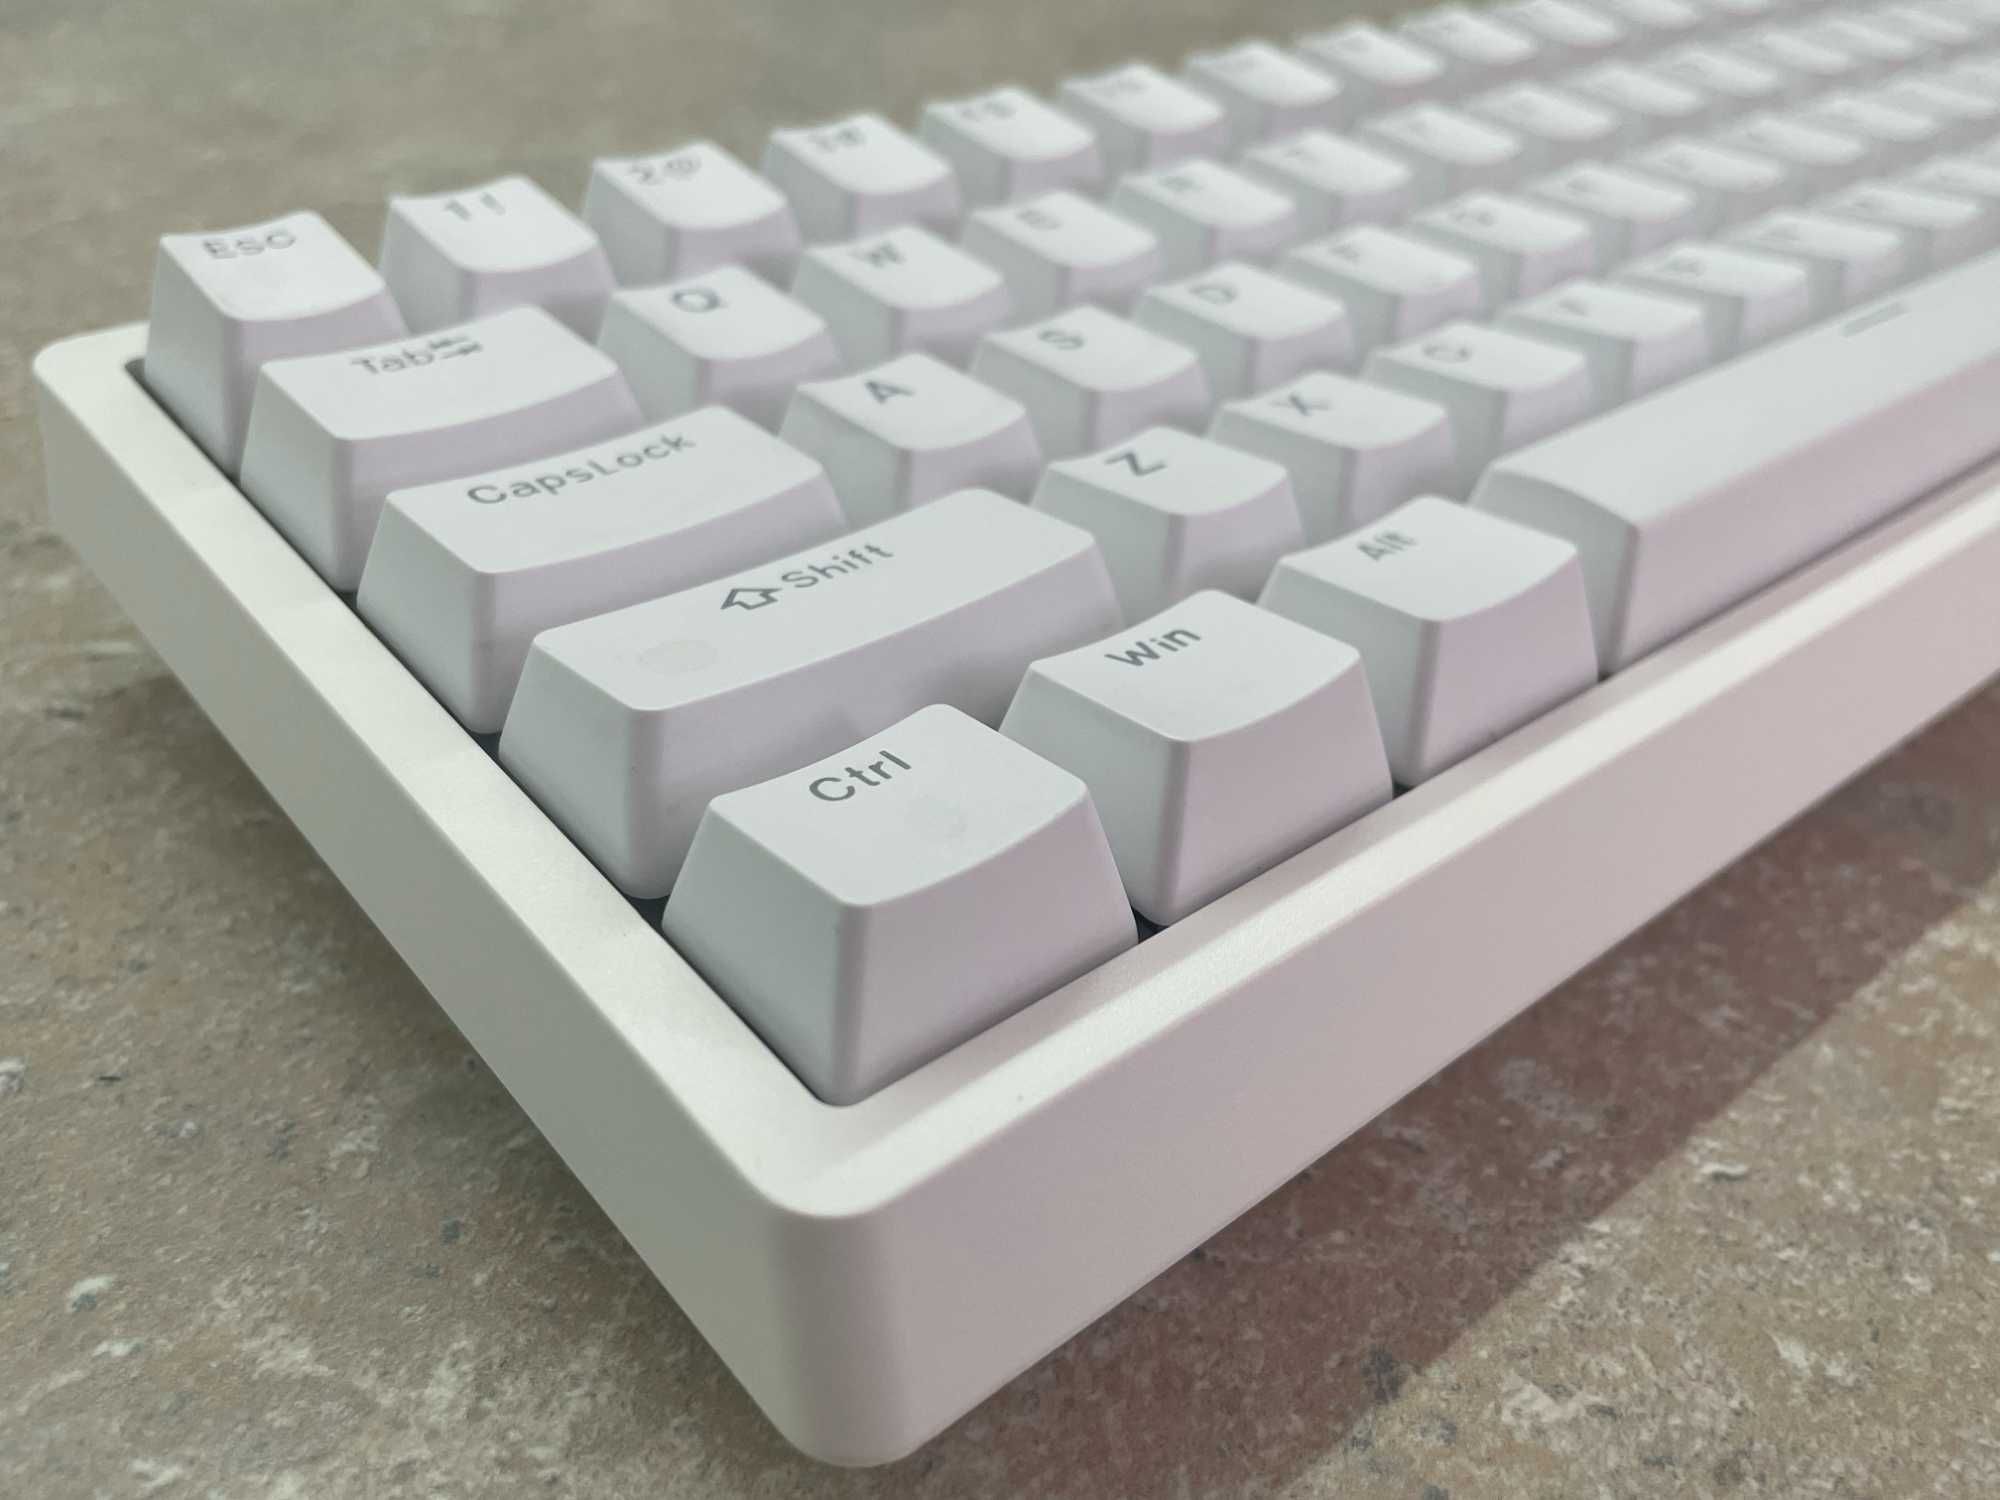 Механічна клавіатура MK67 Pro (безпровідна, хотсвап, RGB)